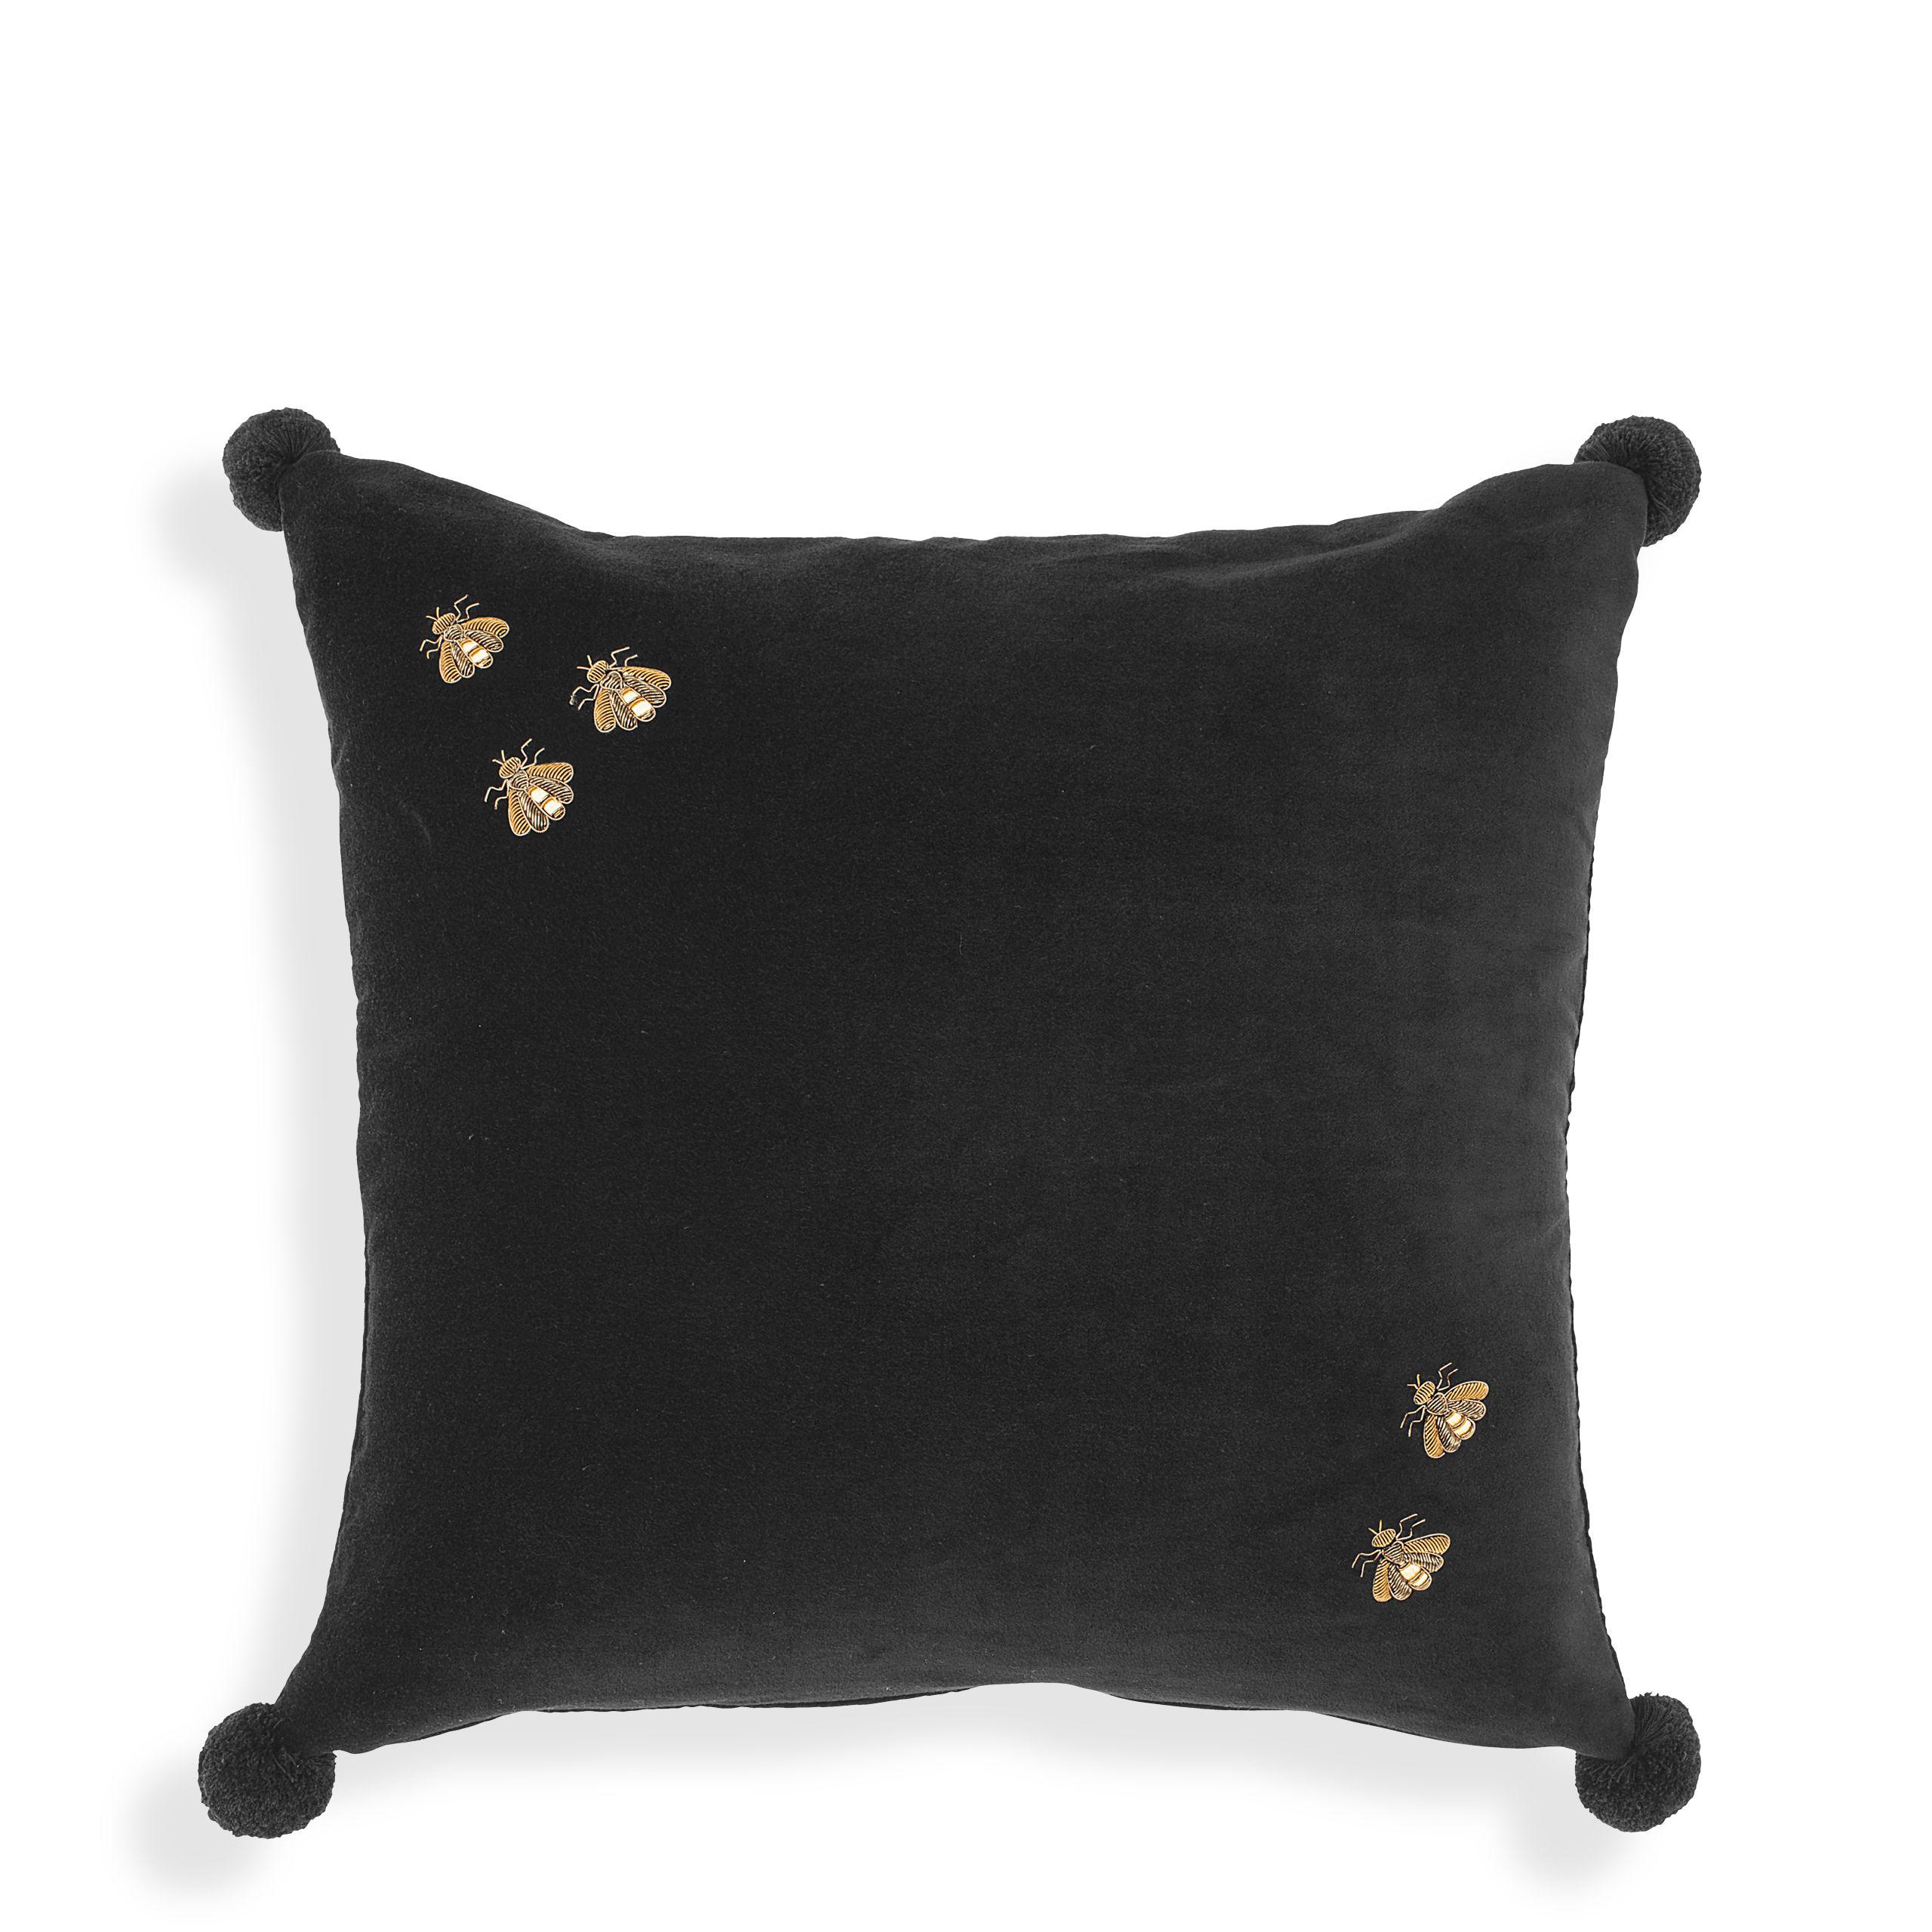 Купить Декоративная подушка Cushion Salgado в интернет-магазине roooms.ru